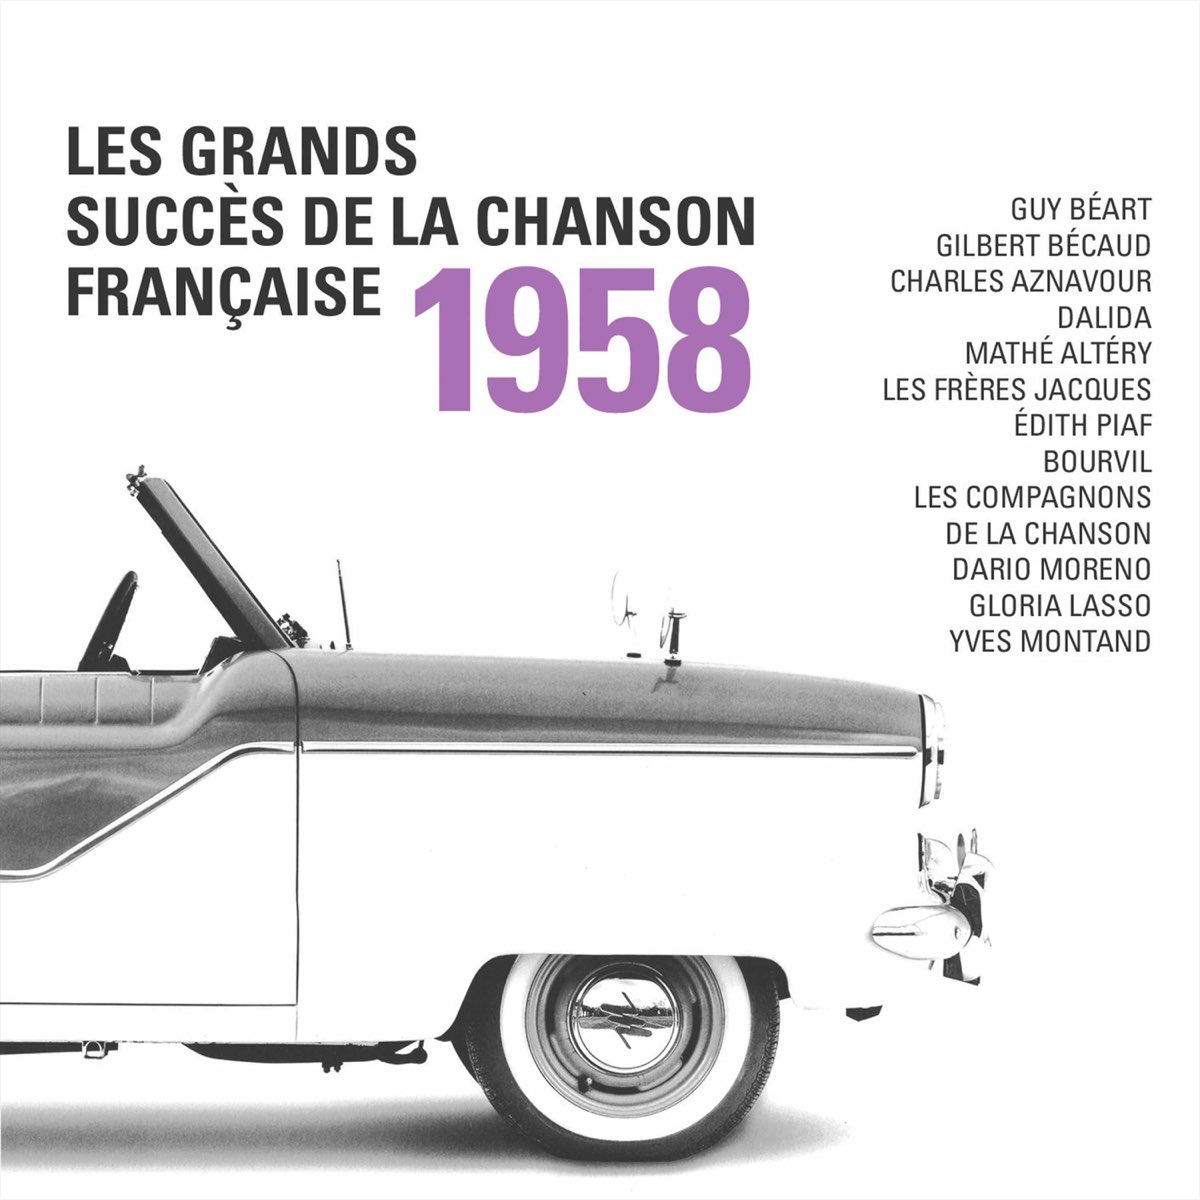 Les grands succès de la chanson française 1958 by Artistes variés on Apple  Music